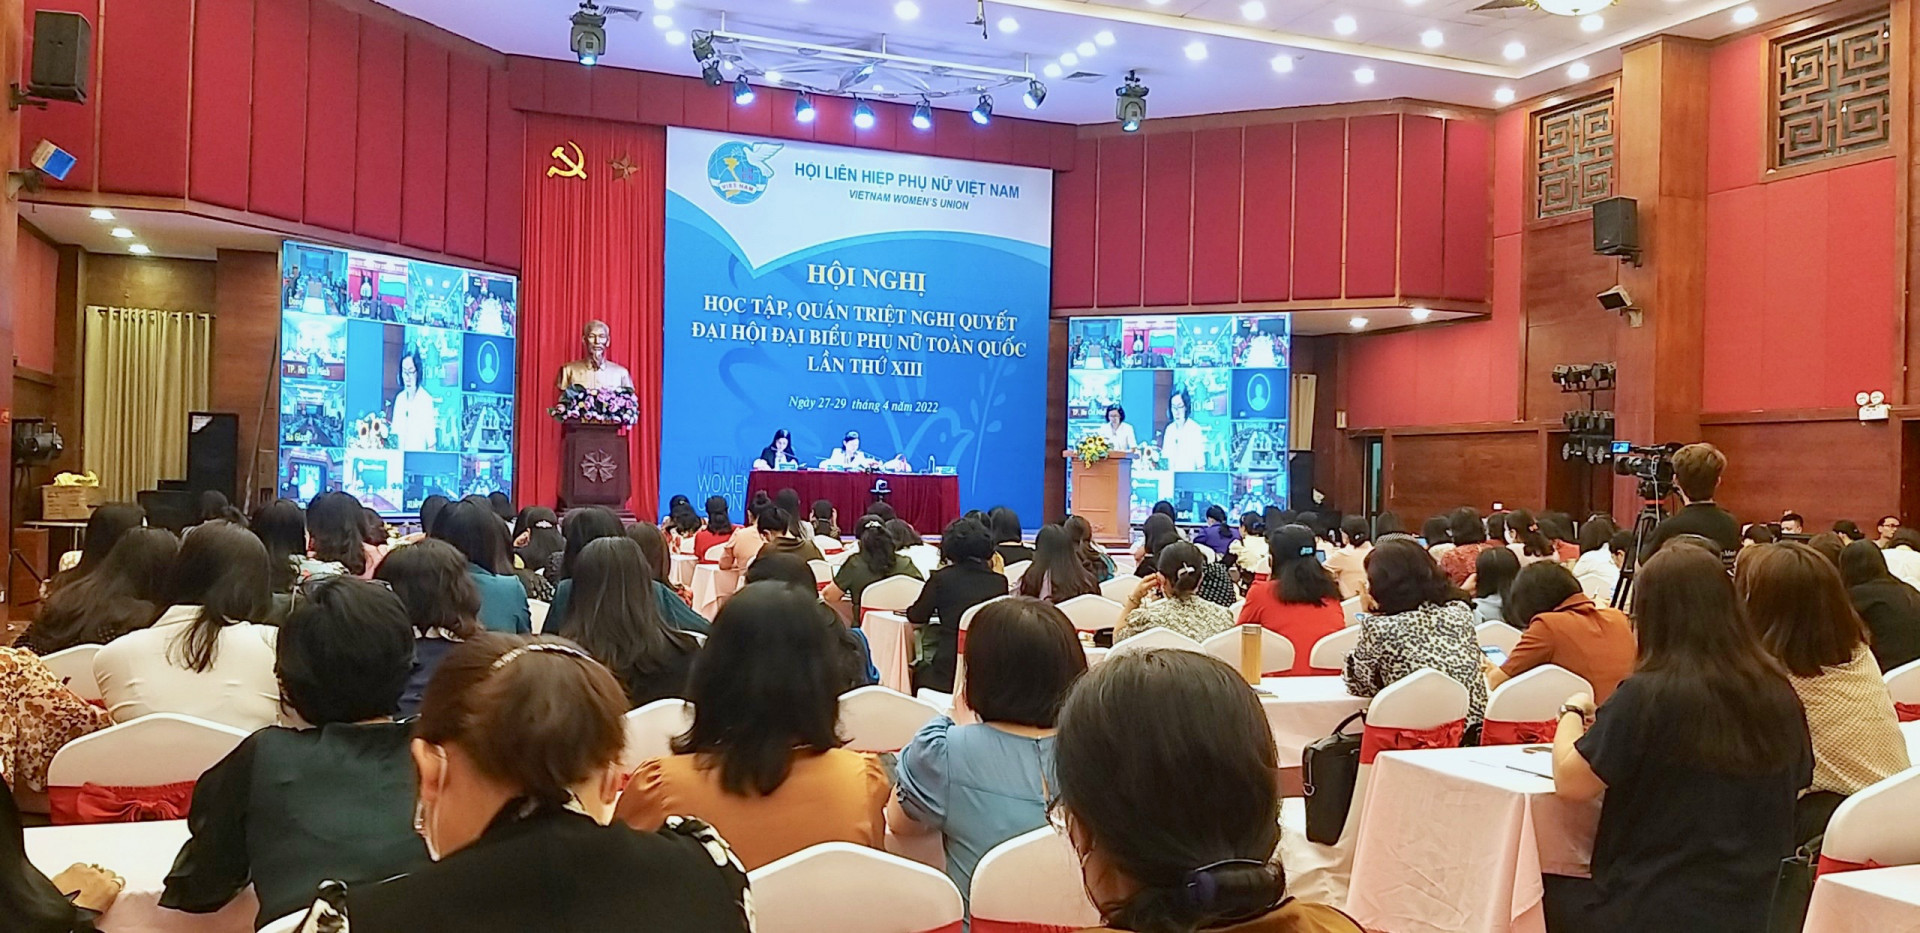 Quang cảng Hội nghị tập huấn - Ảnh: Hồng Dịu